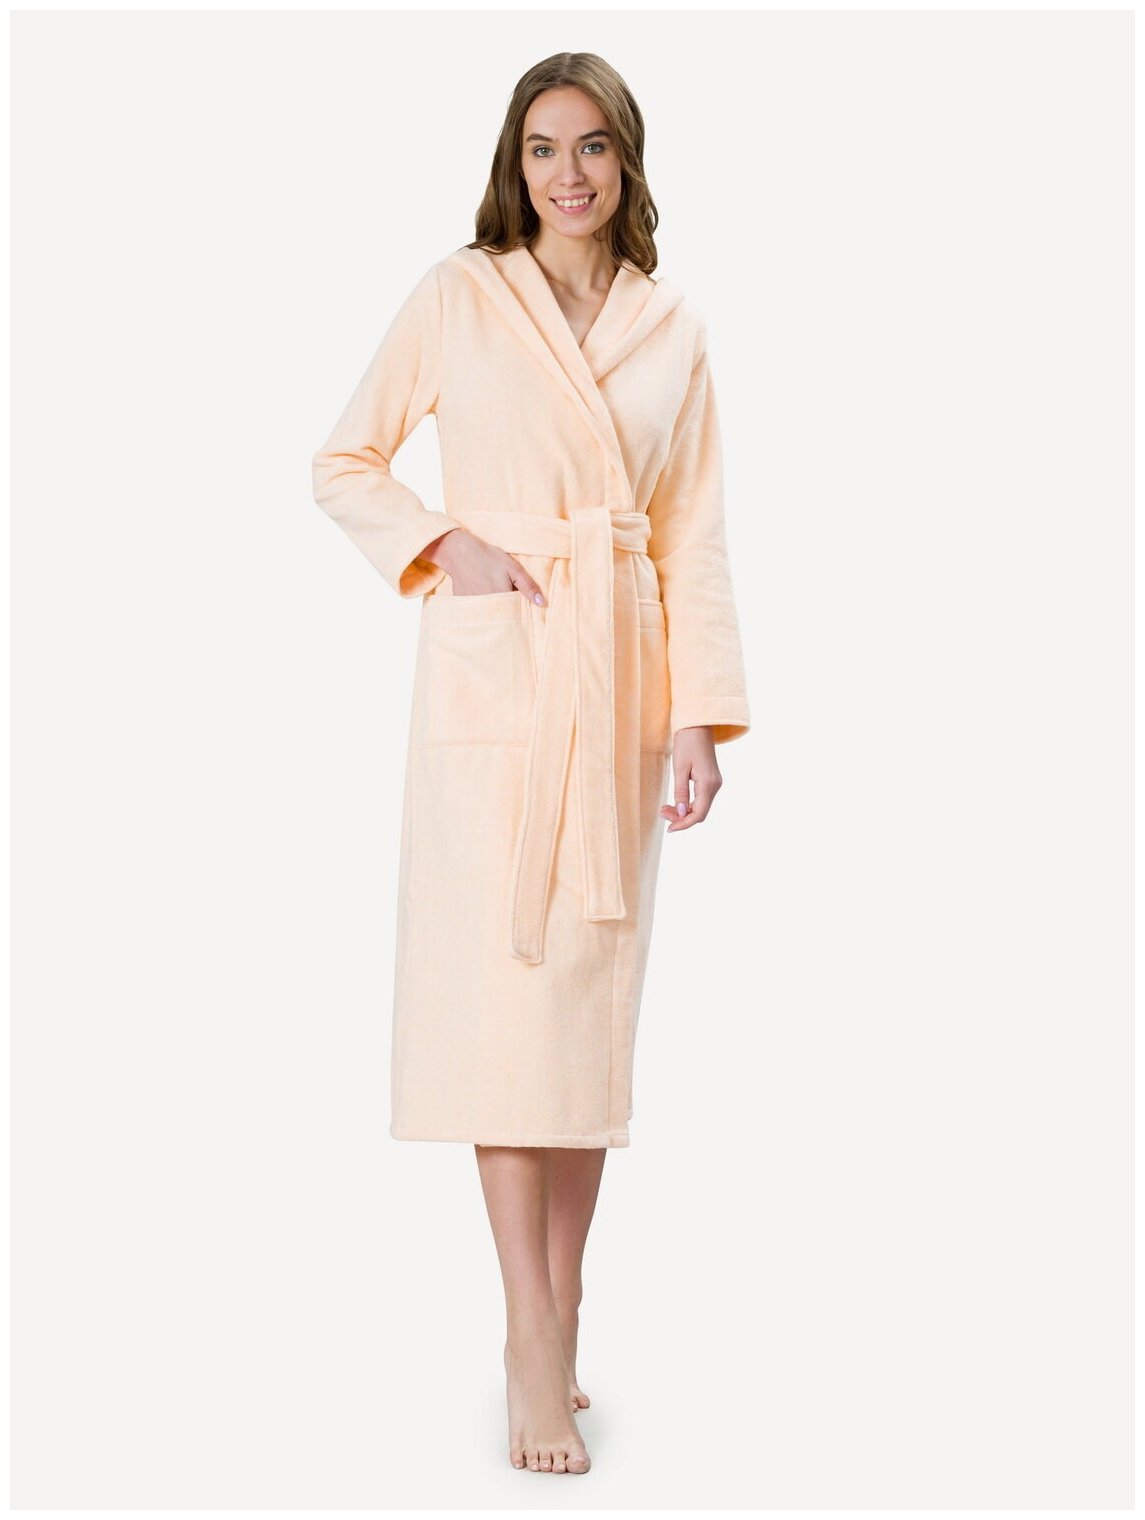 Женский халат с капюшоном, персиковый - фотография № 1